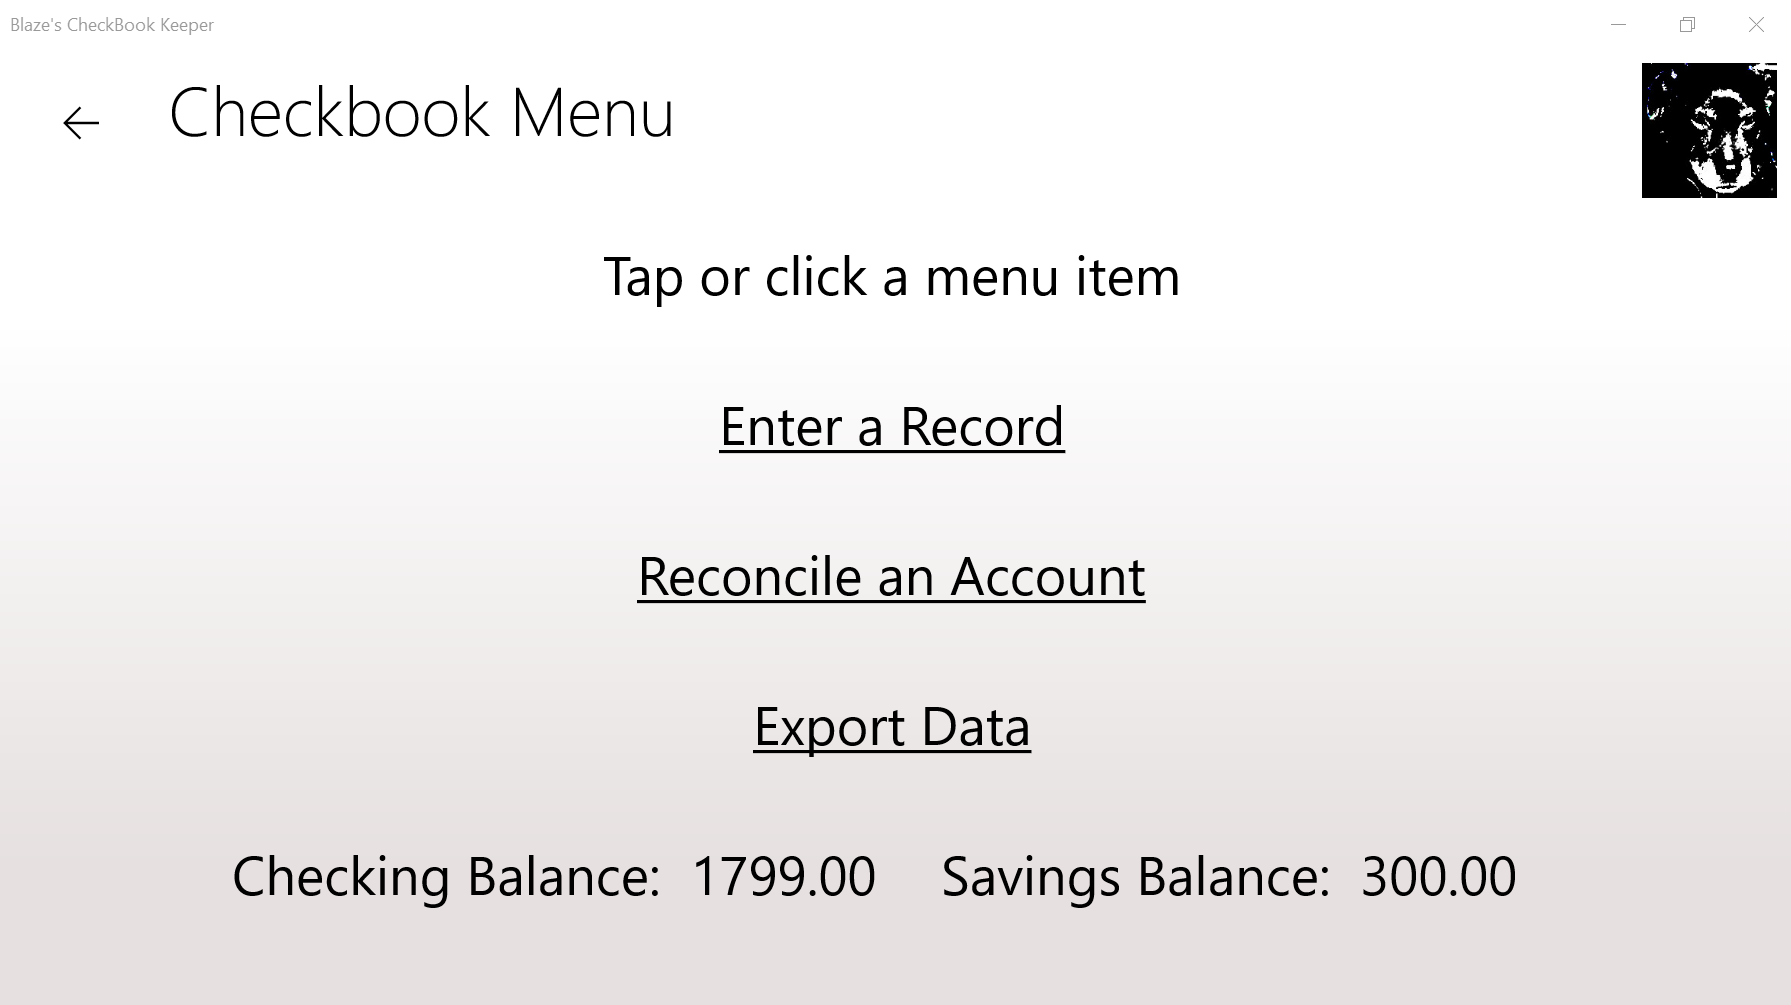 Main menu with account balances